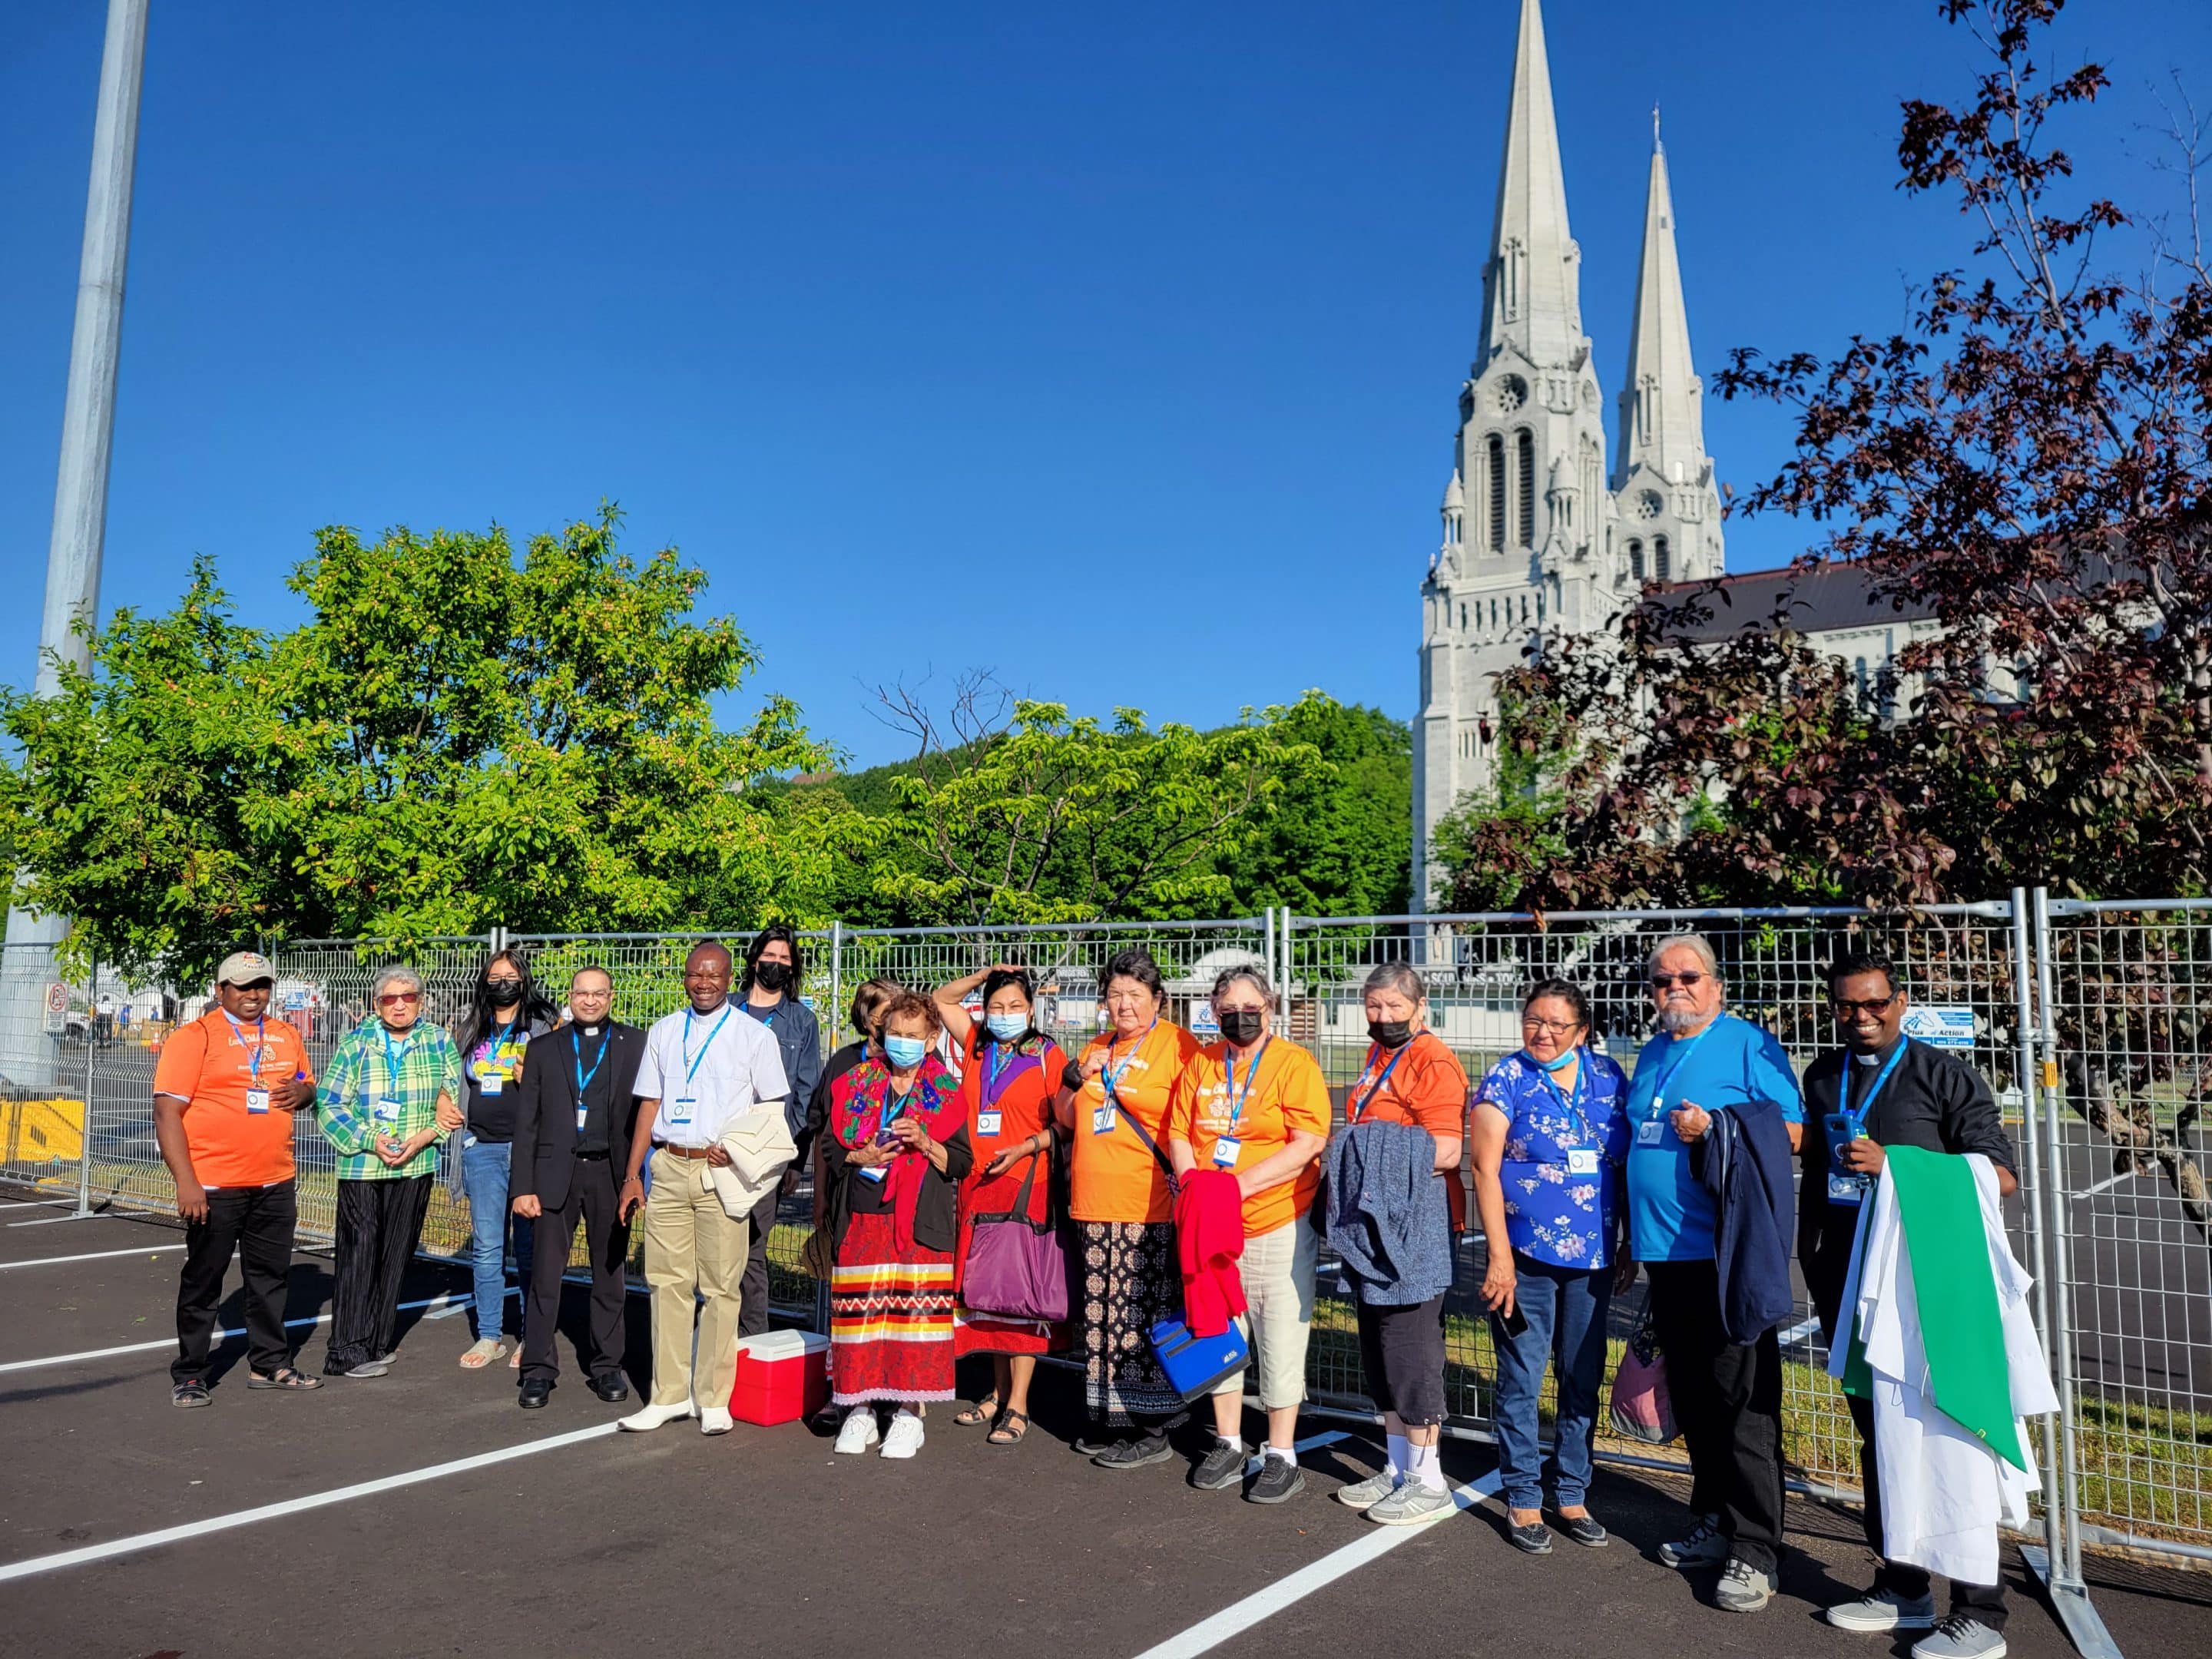 Caminando juntos: Peregrinación al Santuario de Santa Ana de Beaupré en Quebec con el Papa Francisco